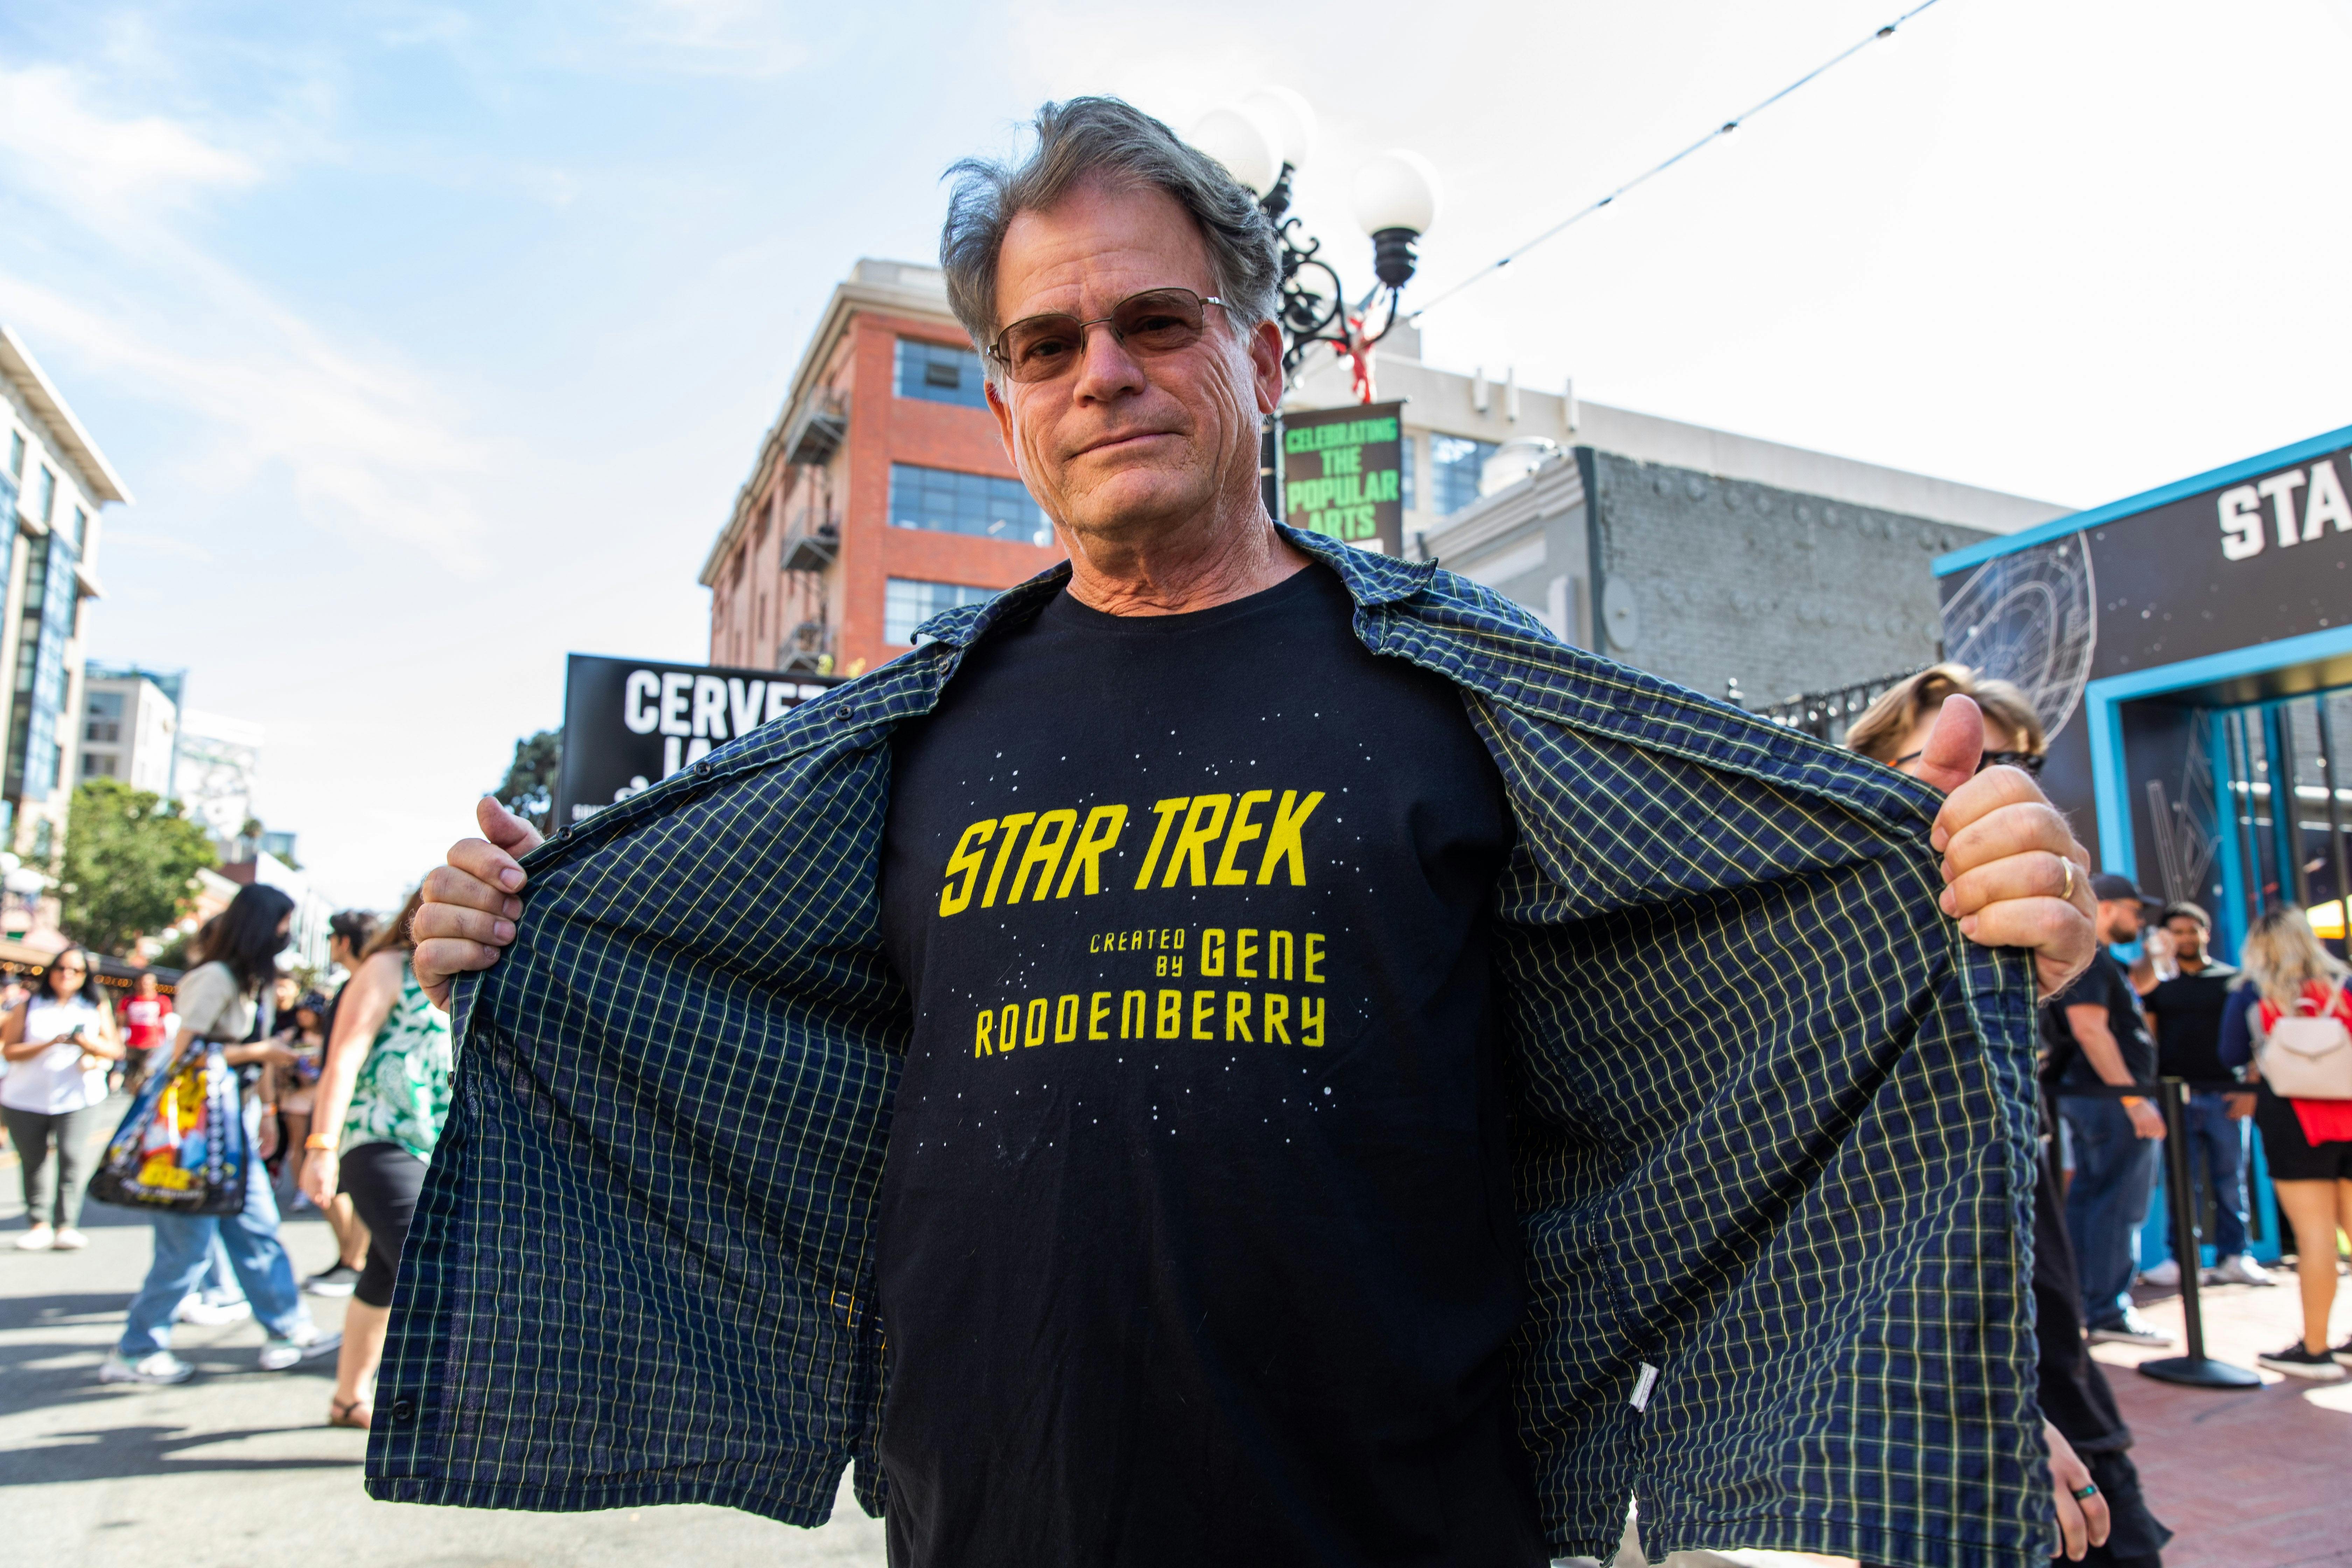 A fan shows off his Star Trek shirt.